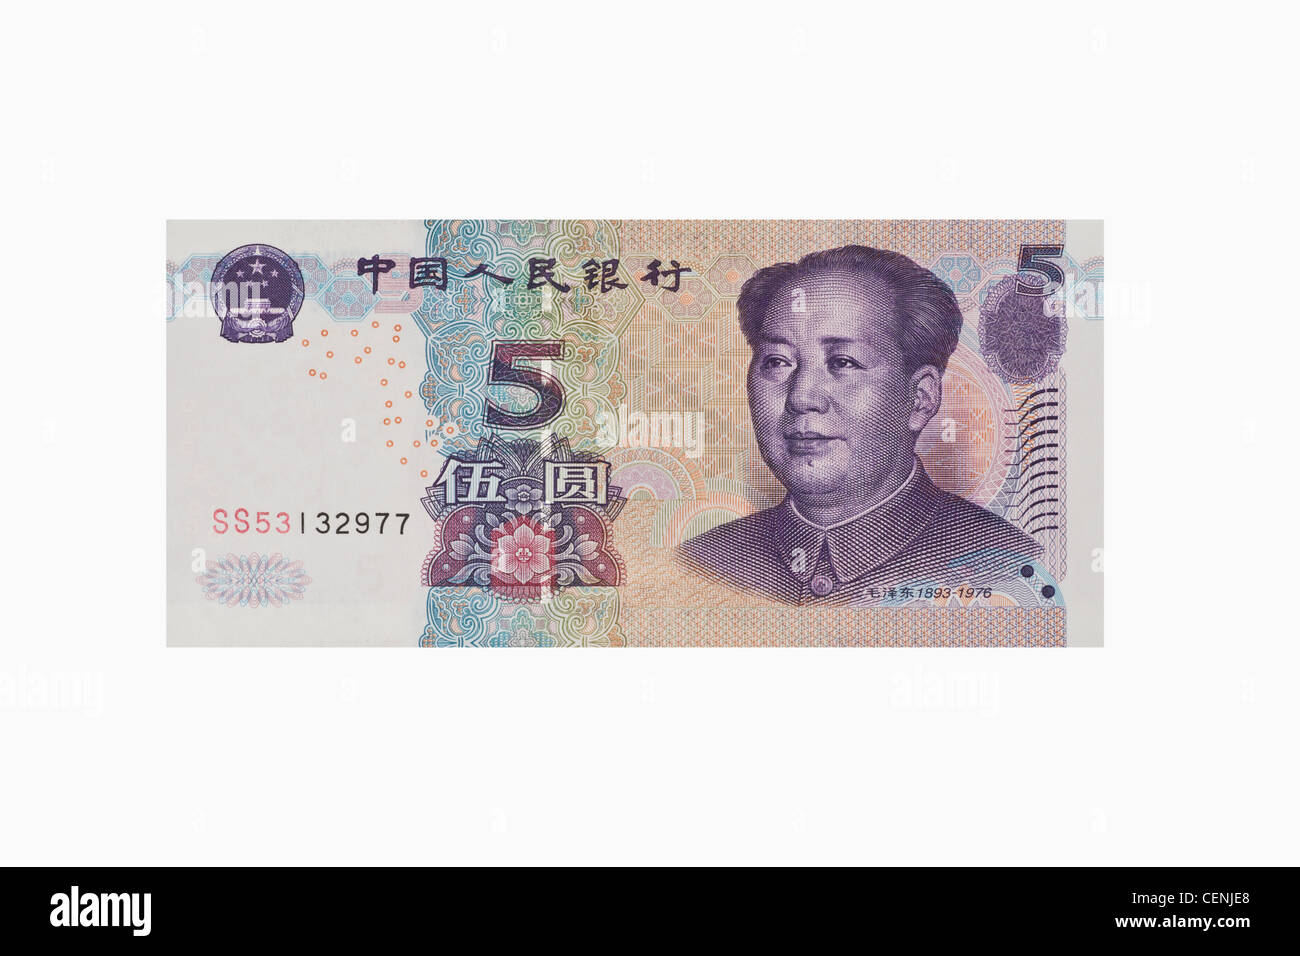 5 yuan bill con il ritratto di Mao Zedong. Il renminbi, la valuta cinese, è stato introdotto nel 1949. Foto Stock